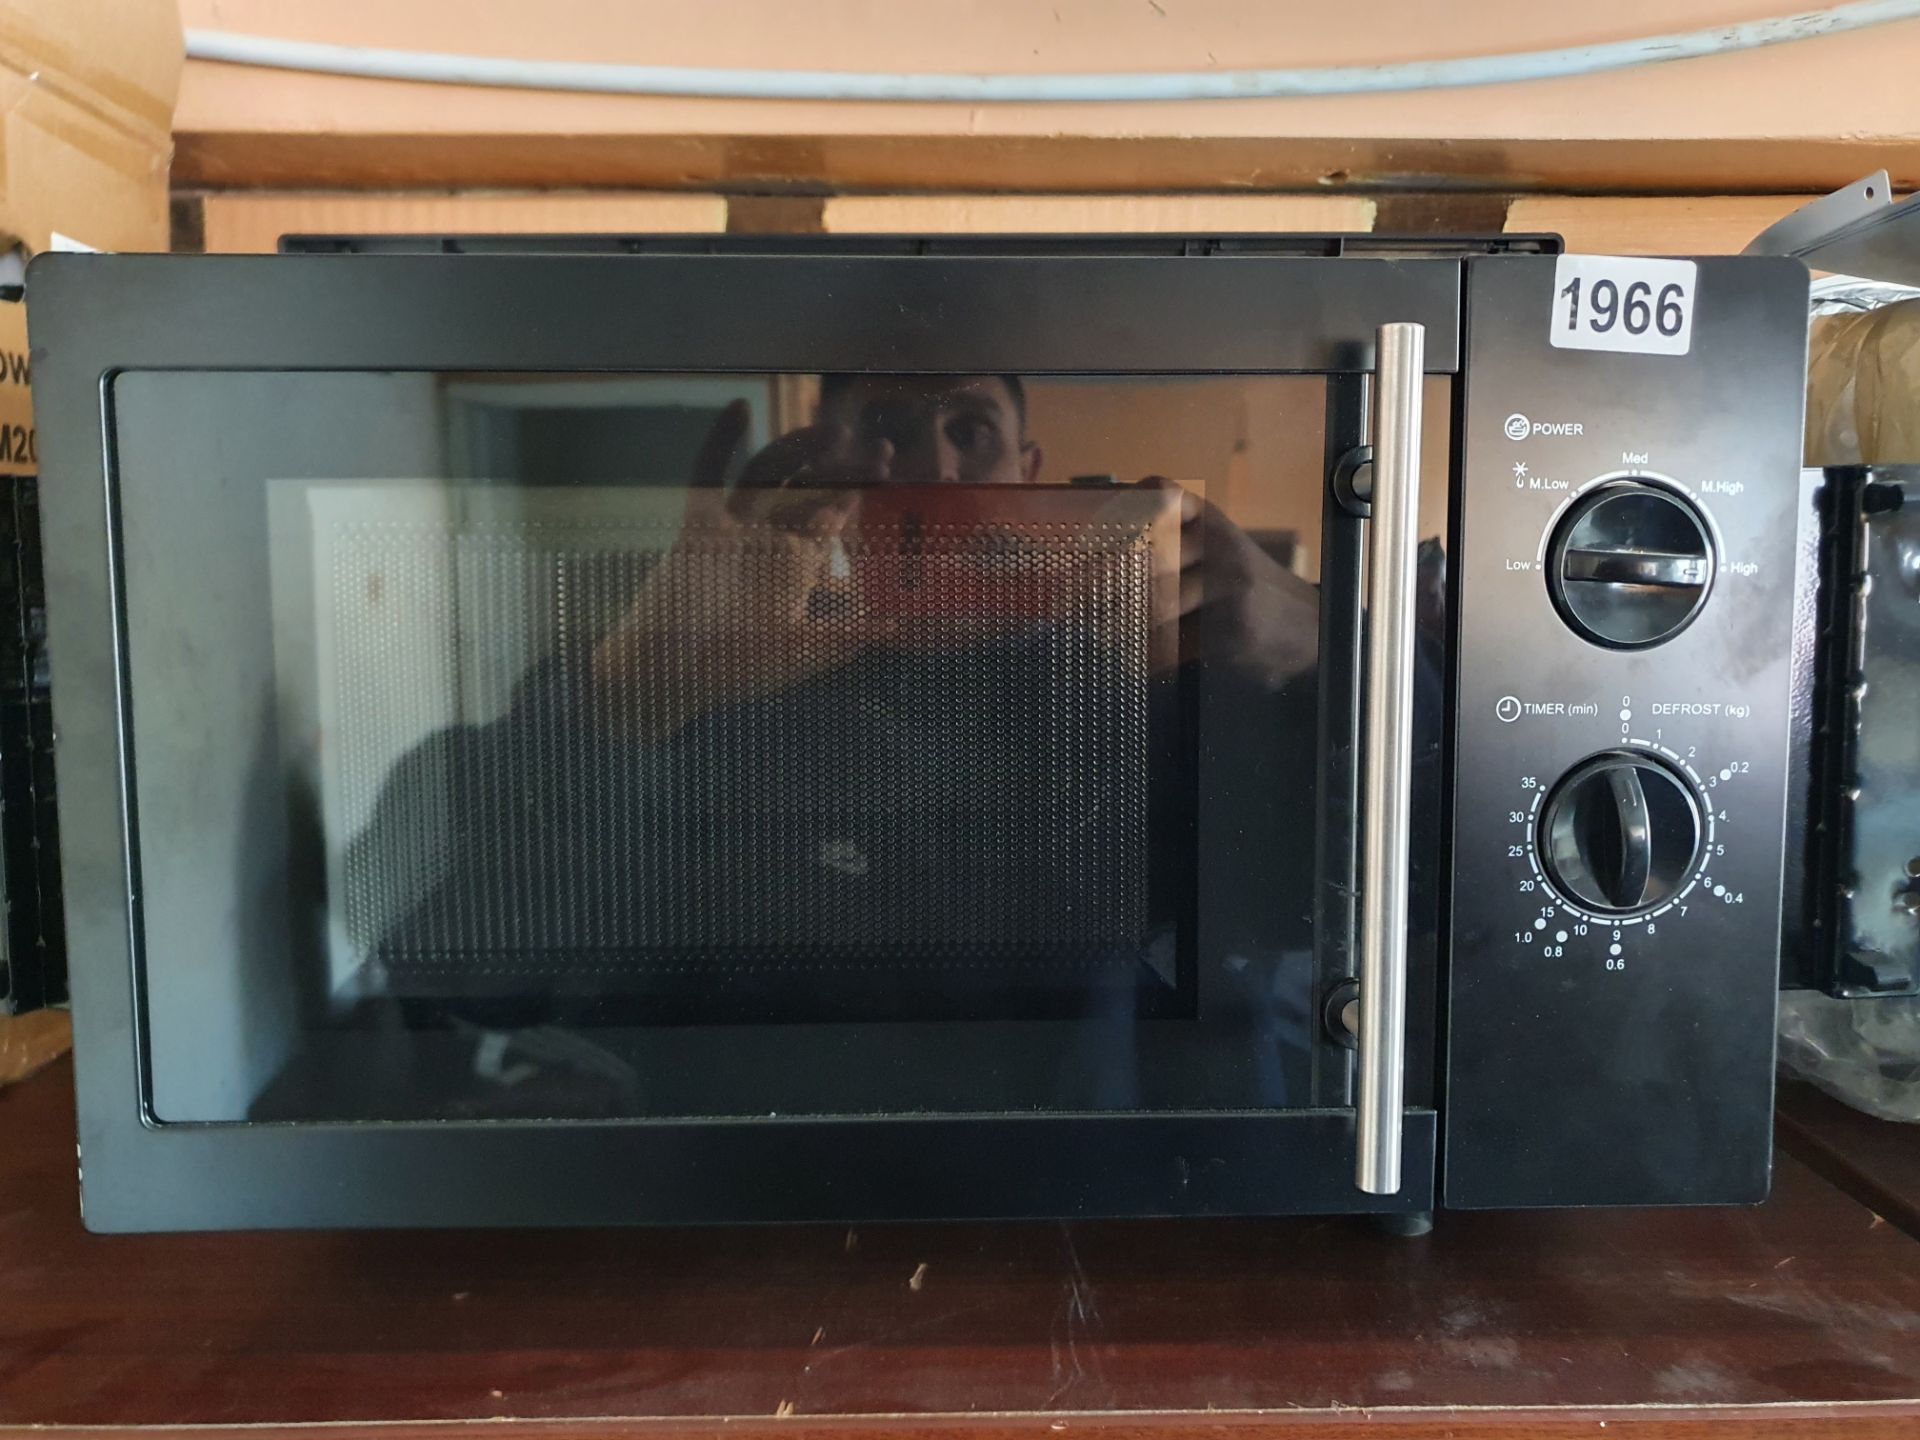 Priman built in microwave RRP £250